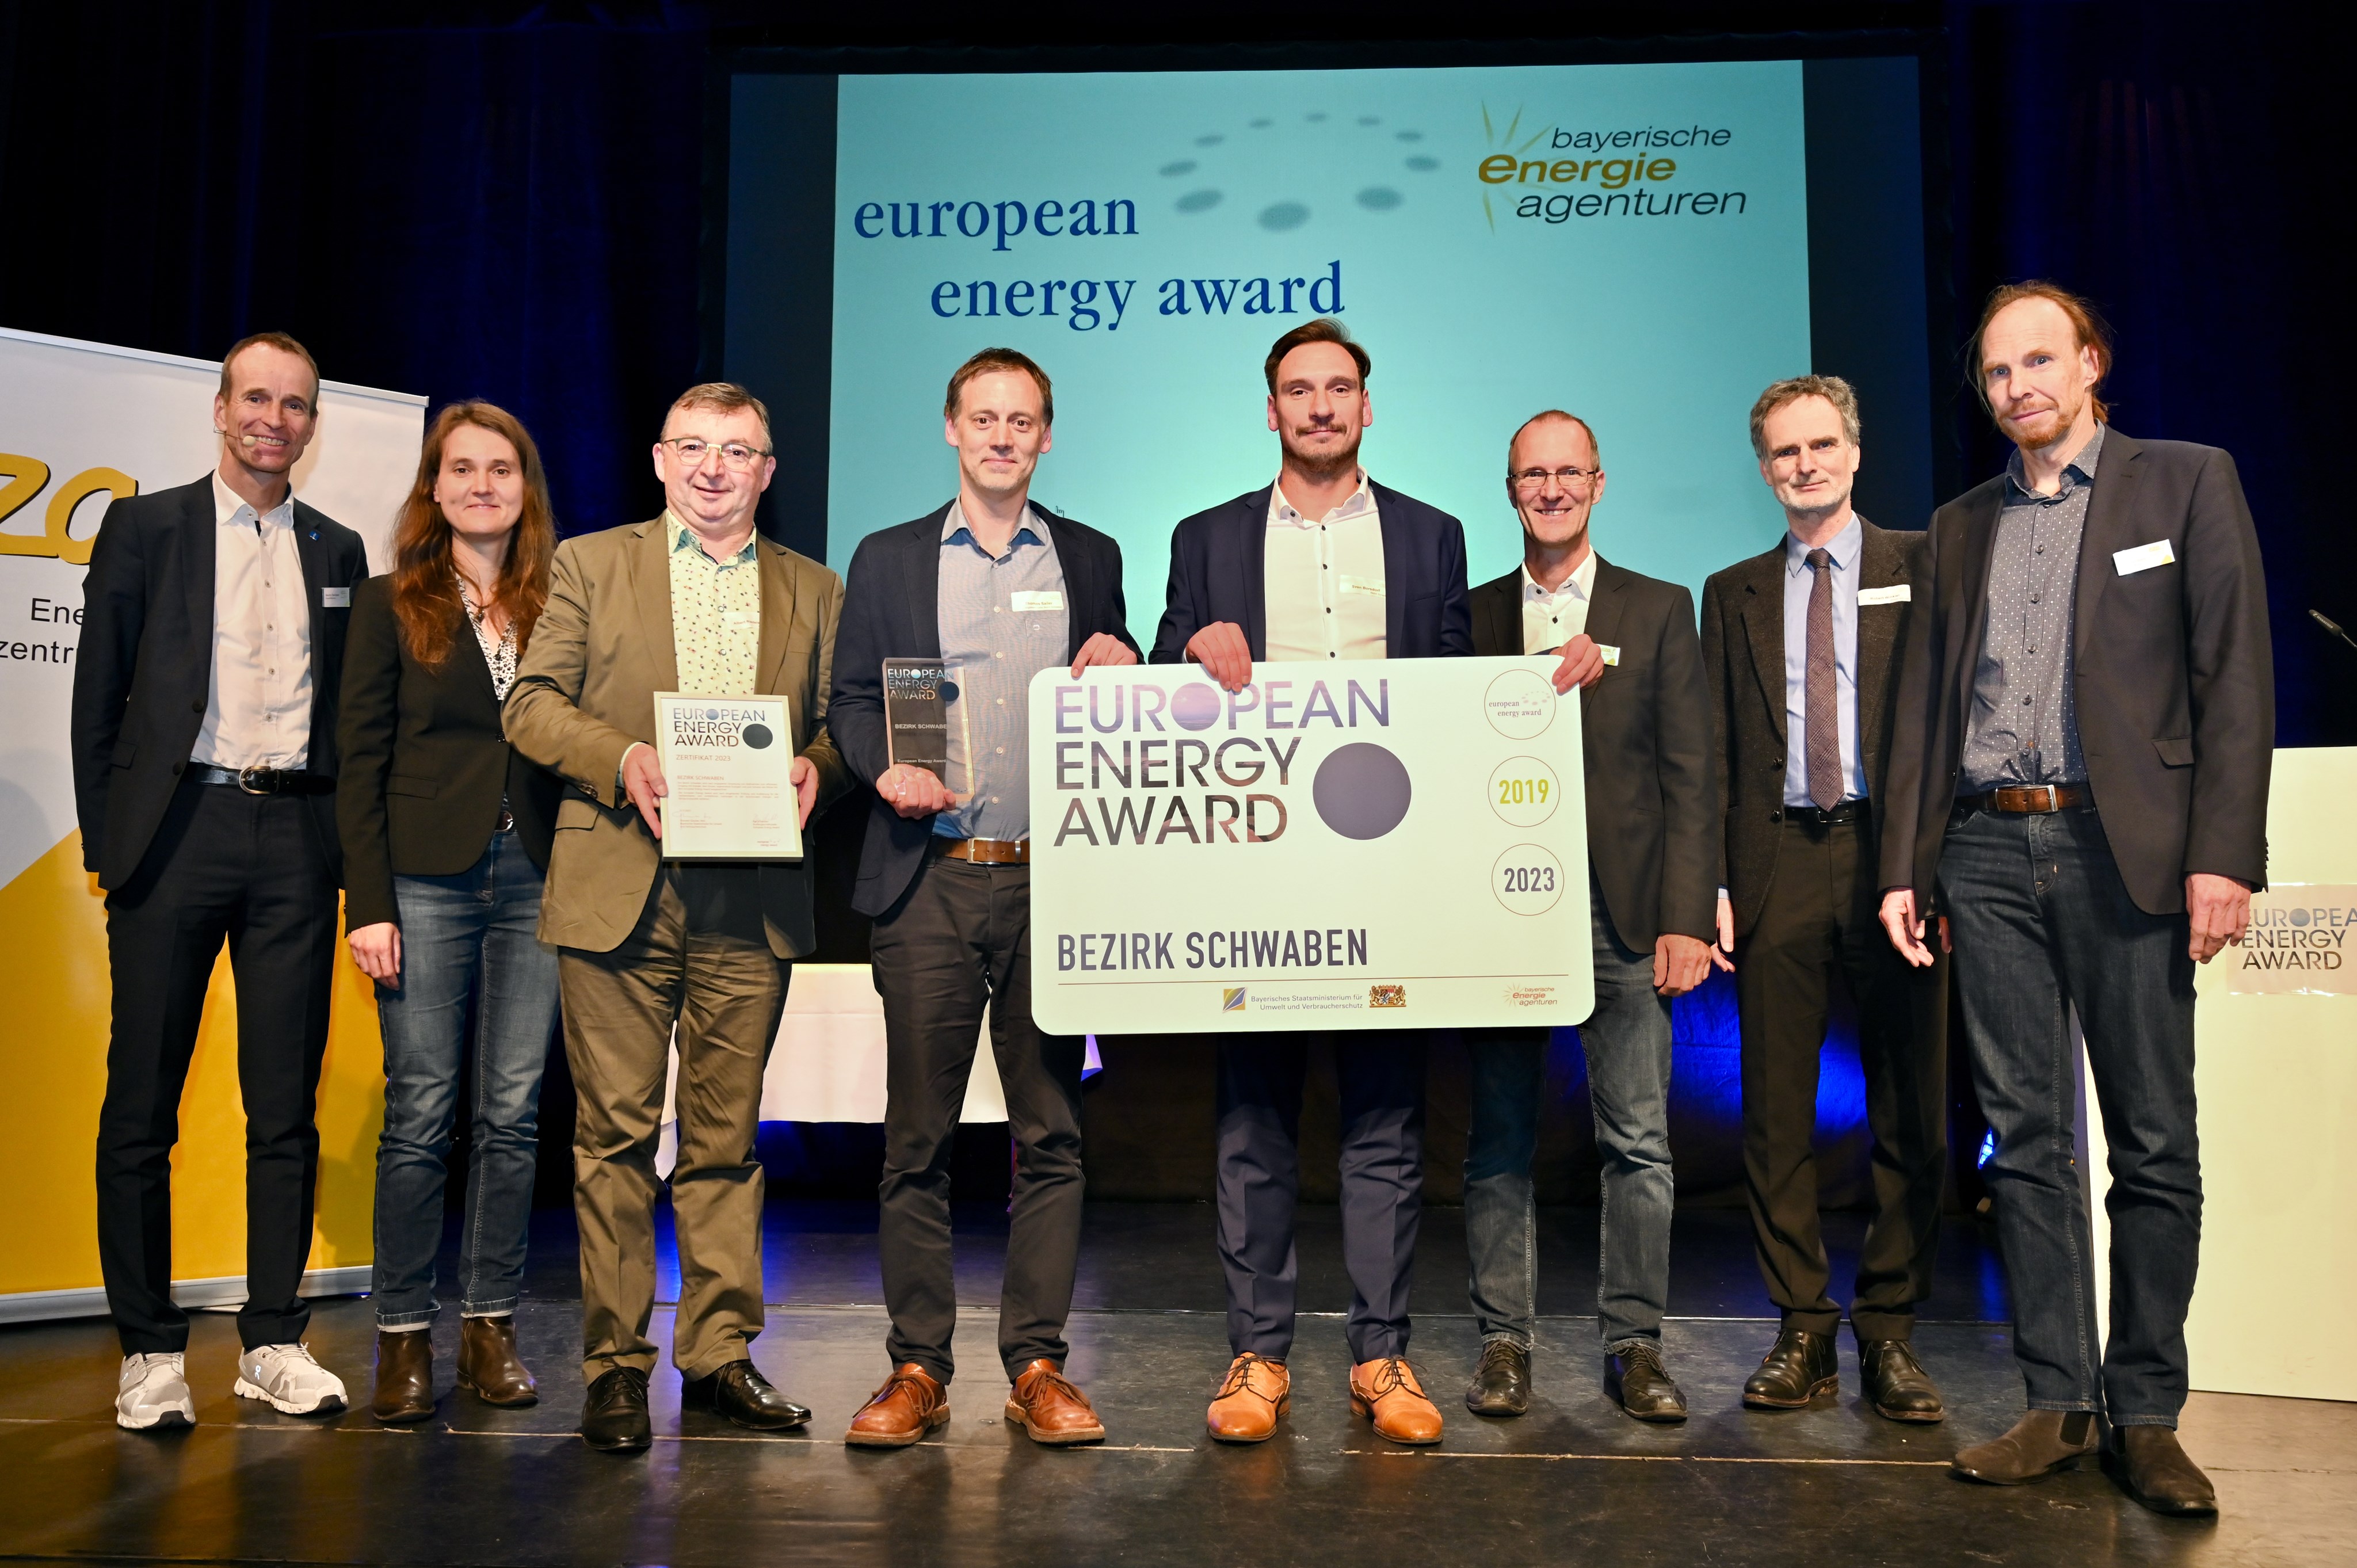 Die Energieteams beim Gruppenbild nach der Verleihung des European Energy Award im Kurhaus Göggingen in Augsburg. Foto: Andreas Lode